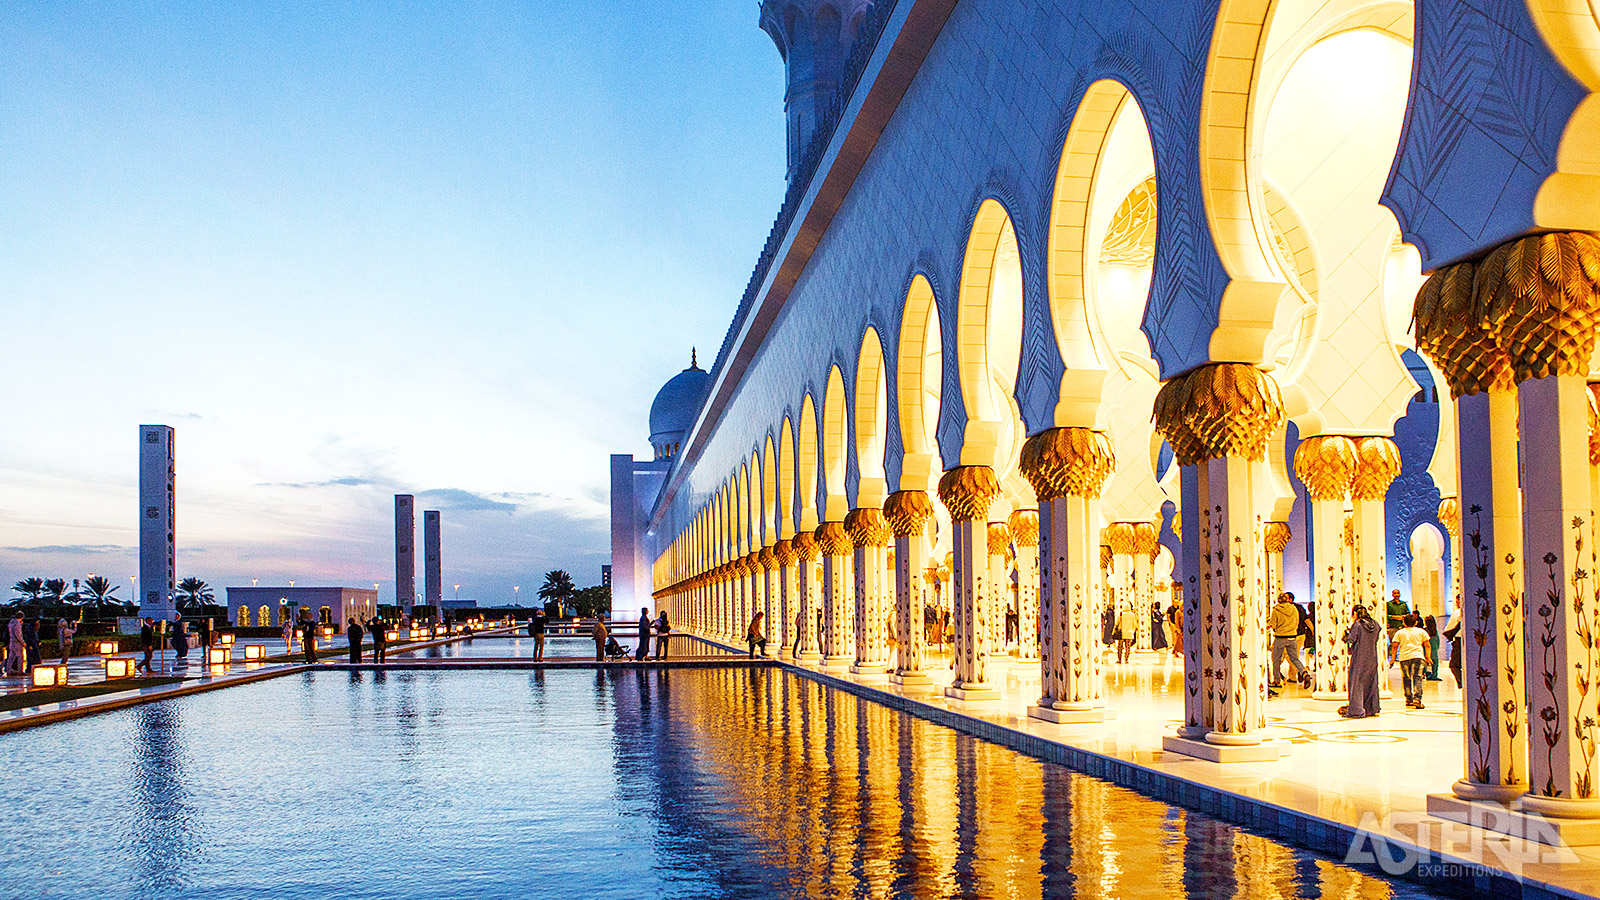 Het ontwerp van de Sheikh Zayed Grand Mosque is geïnspireerd op Mogol-architectuur met Moorse en Perzische elementen